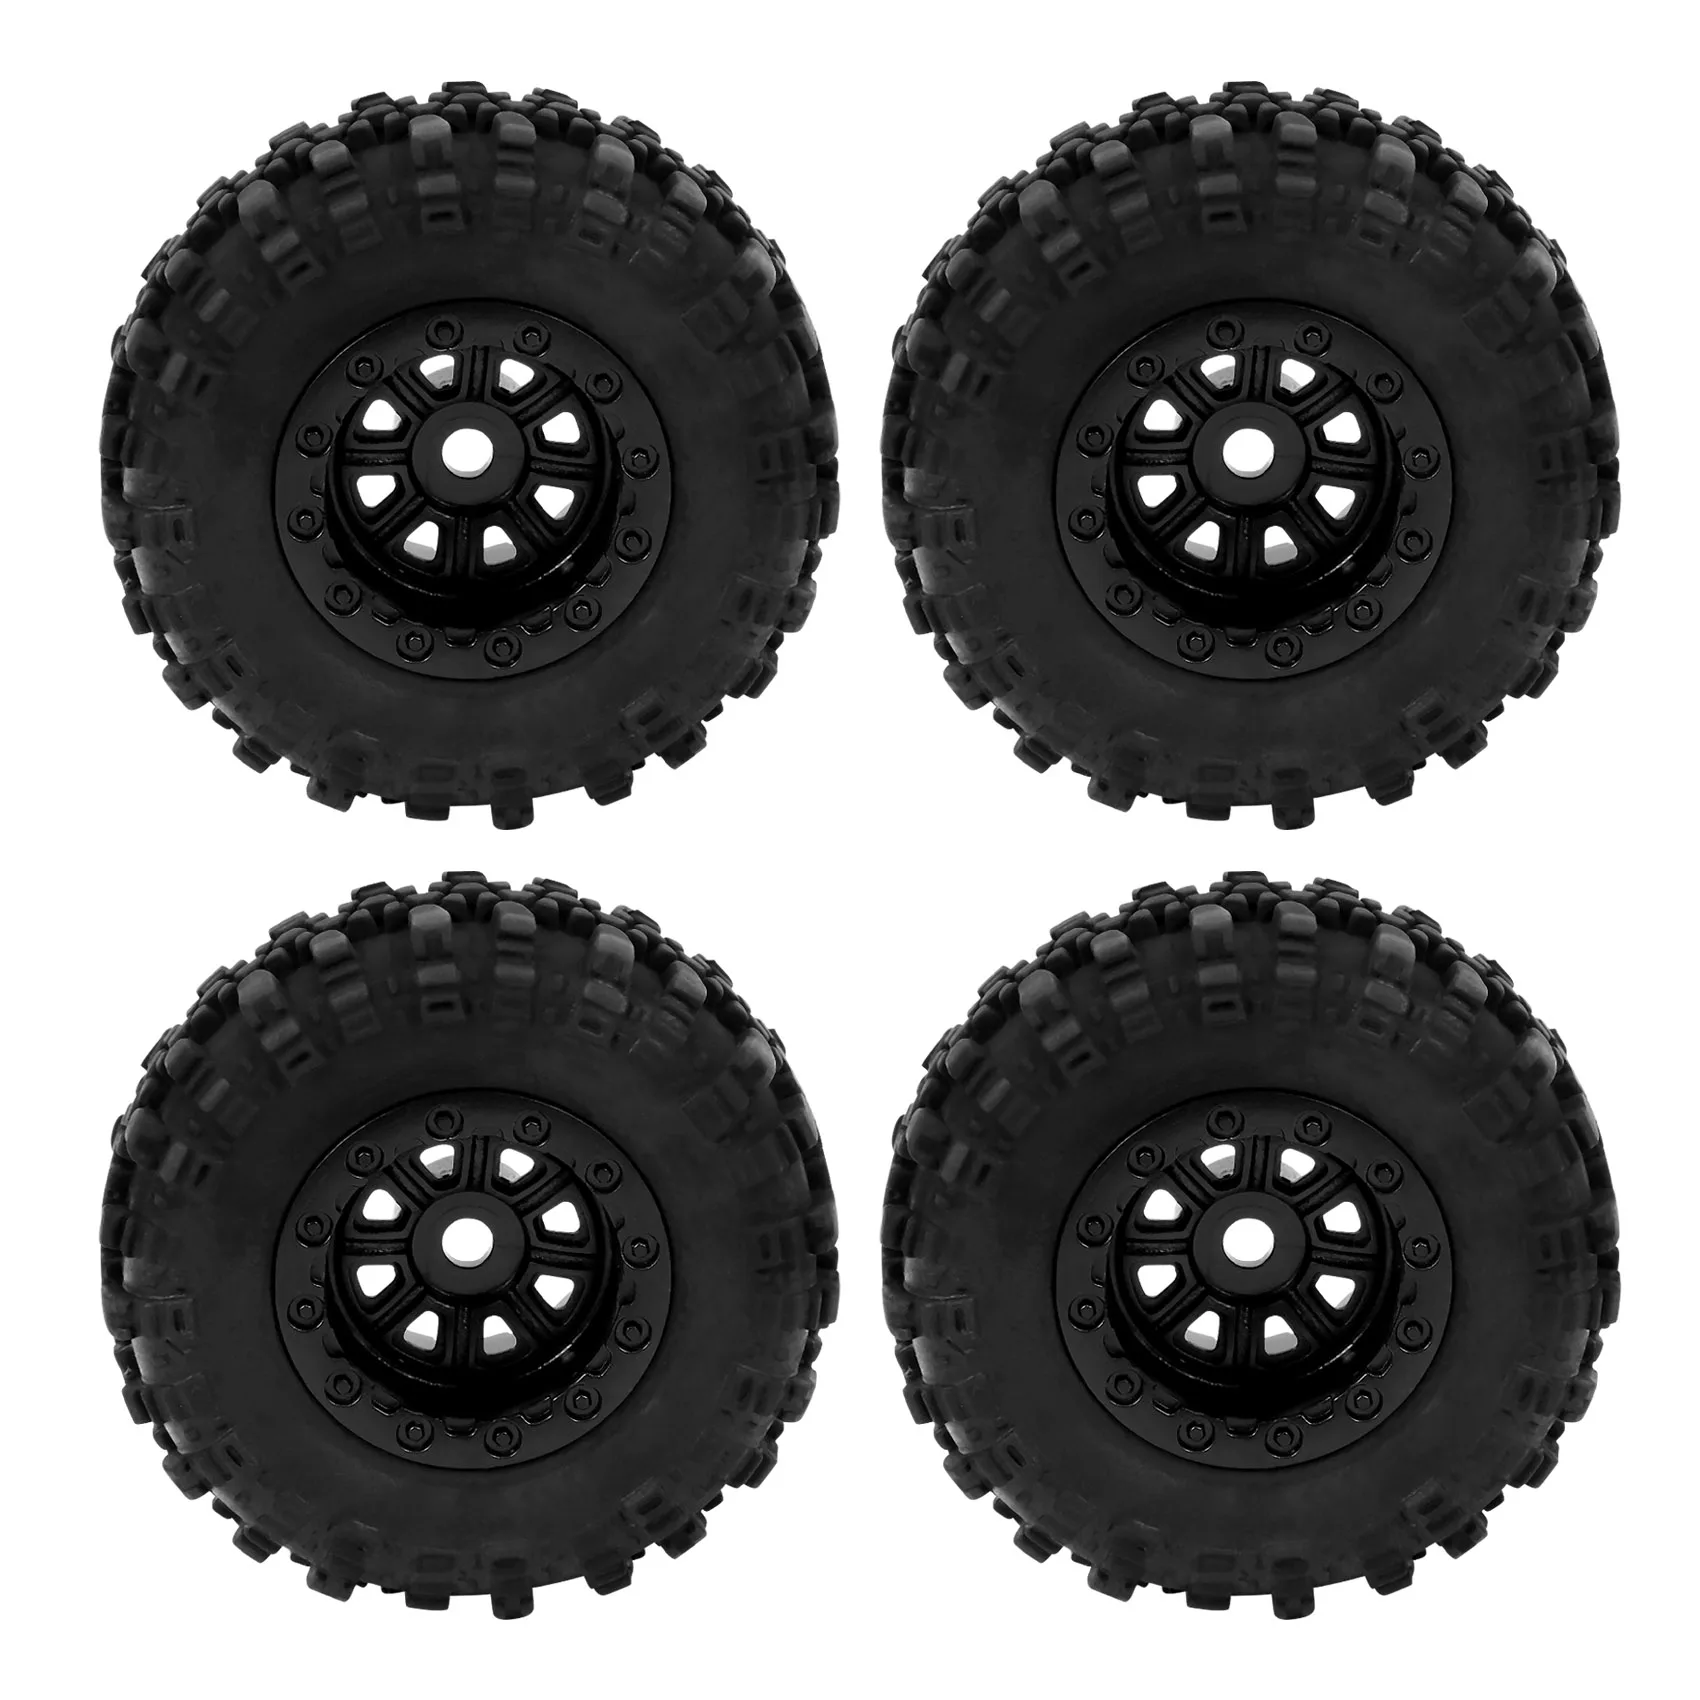 

4PCS 47X18mm Wheel Rims Tires Tyre Set for Axial SCX24 90081 AXI00001 1/24 RC Crawler Car Upgrade Parts Accessories